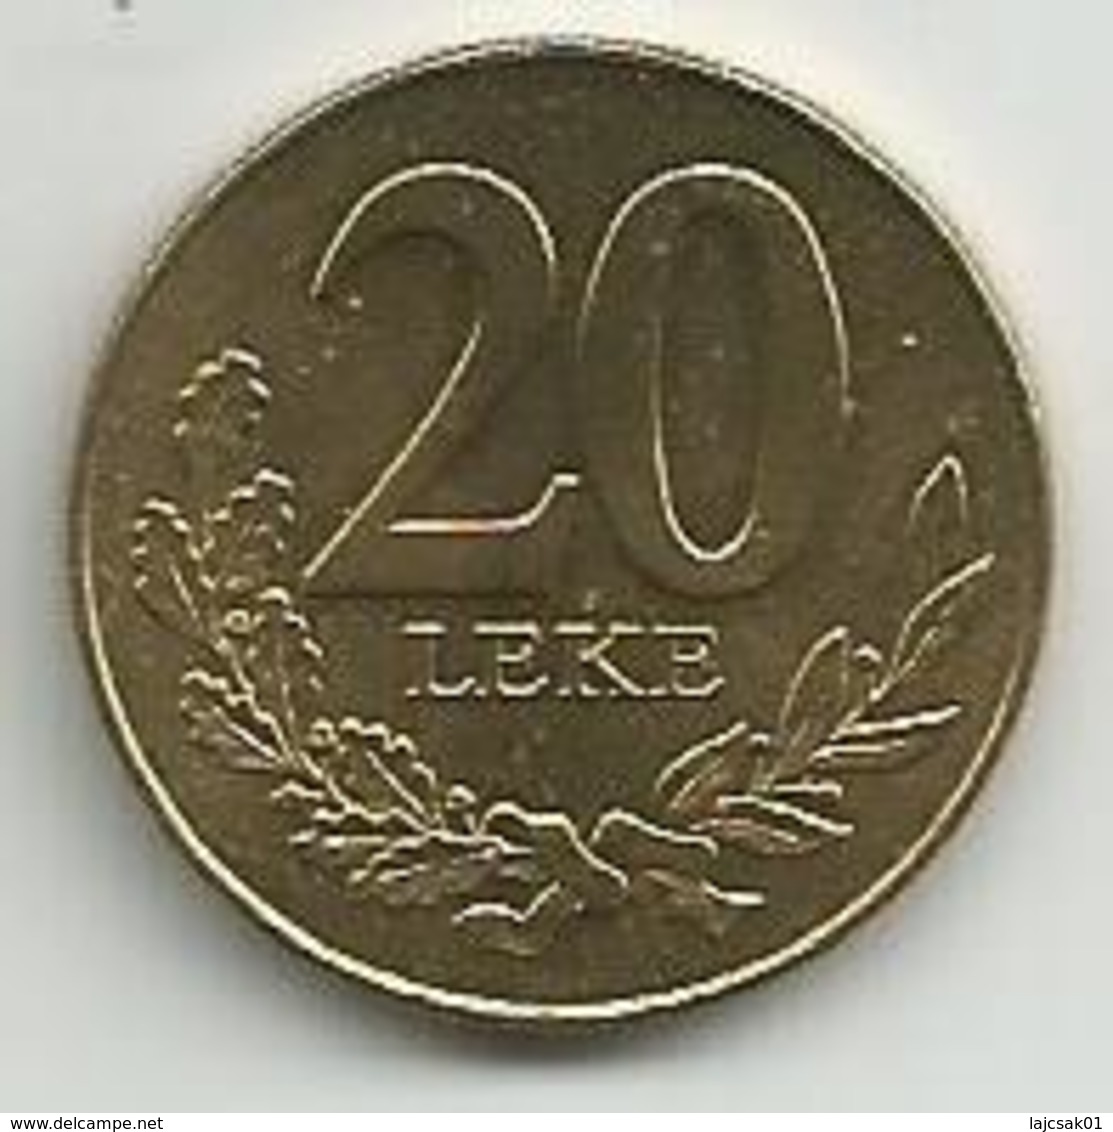 Albania 20 Leke 2000. High Grade - Albania